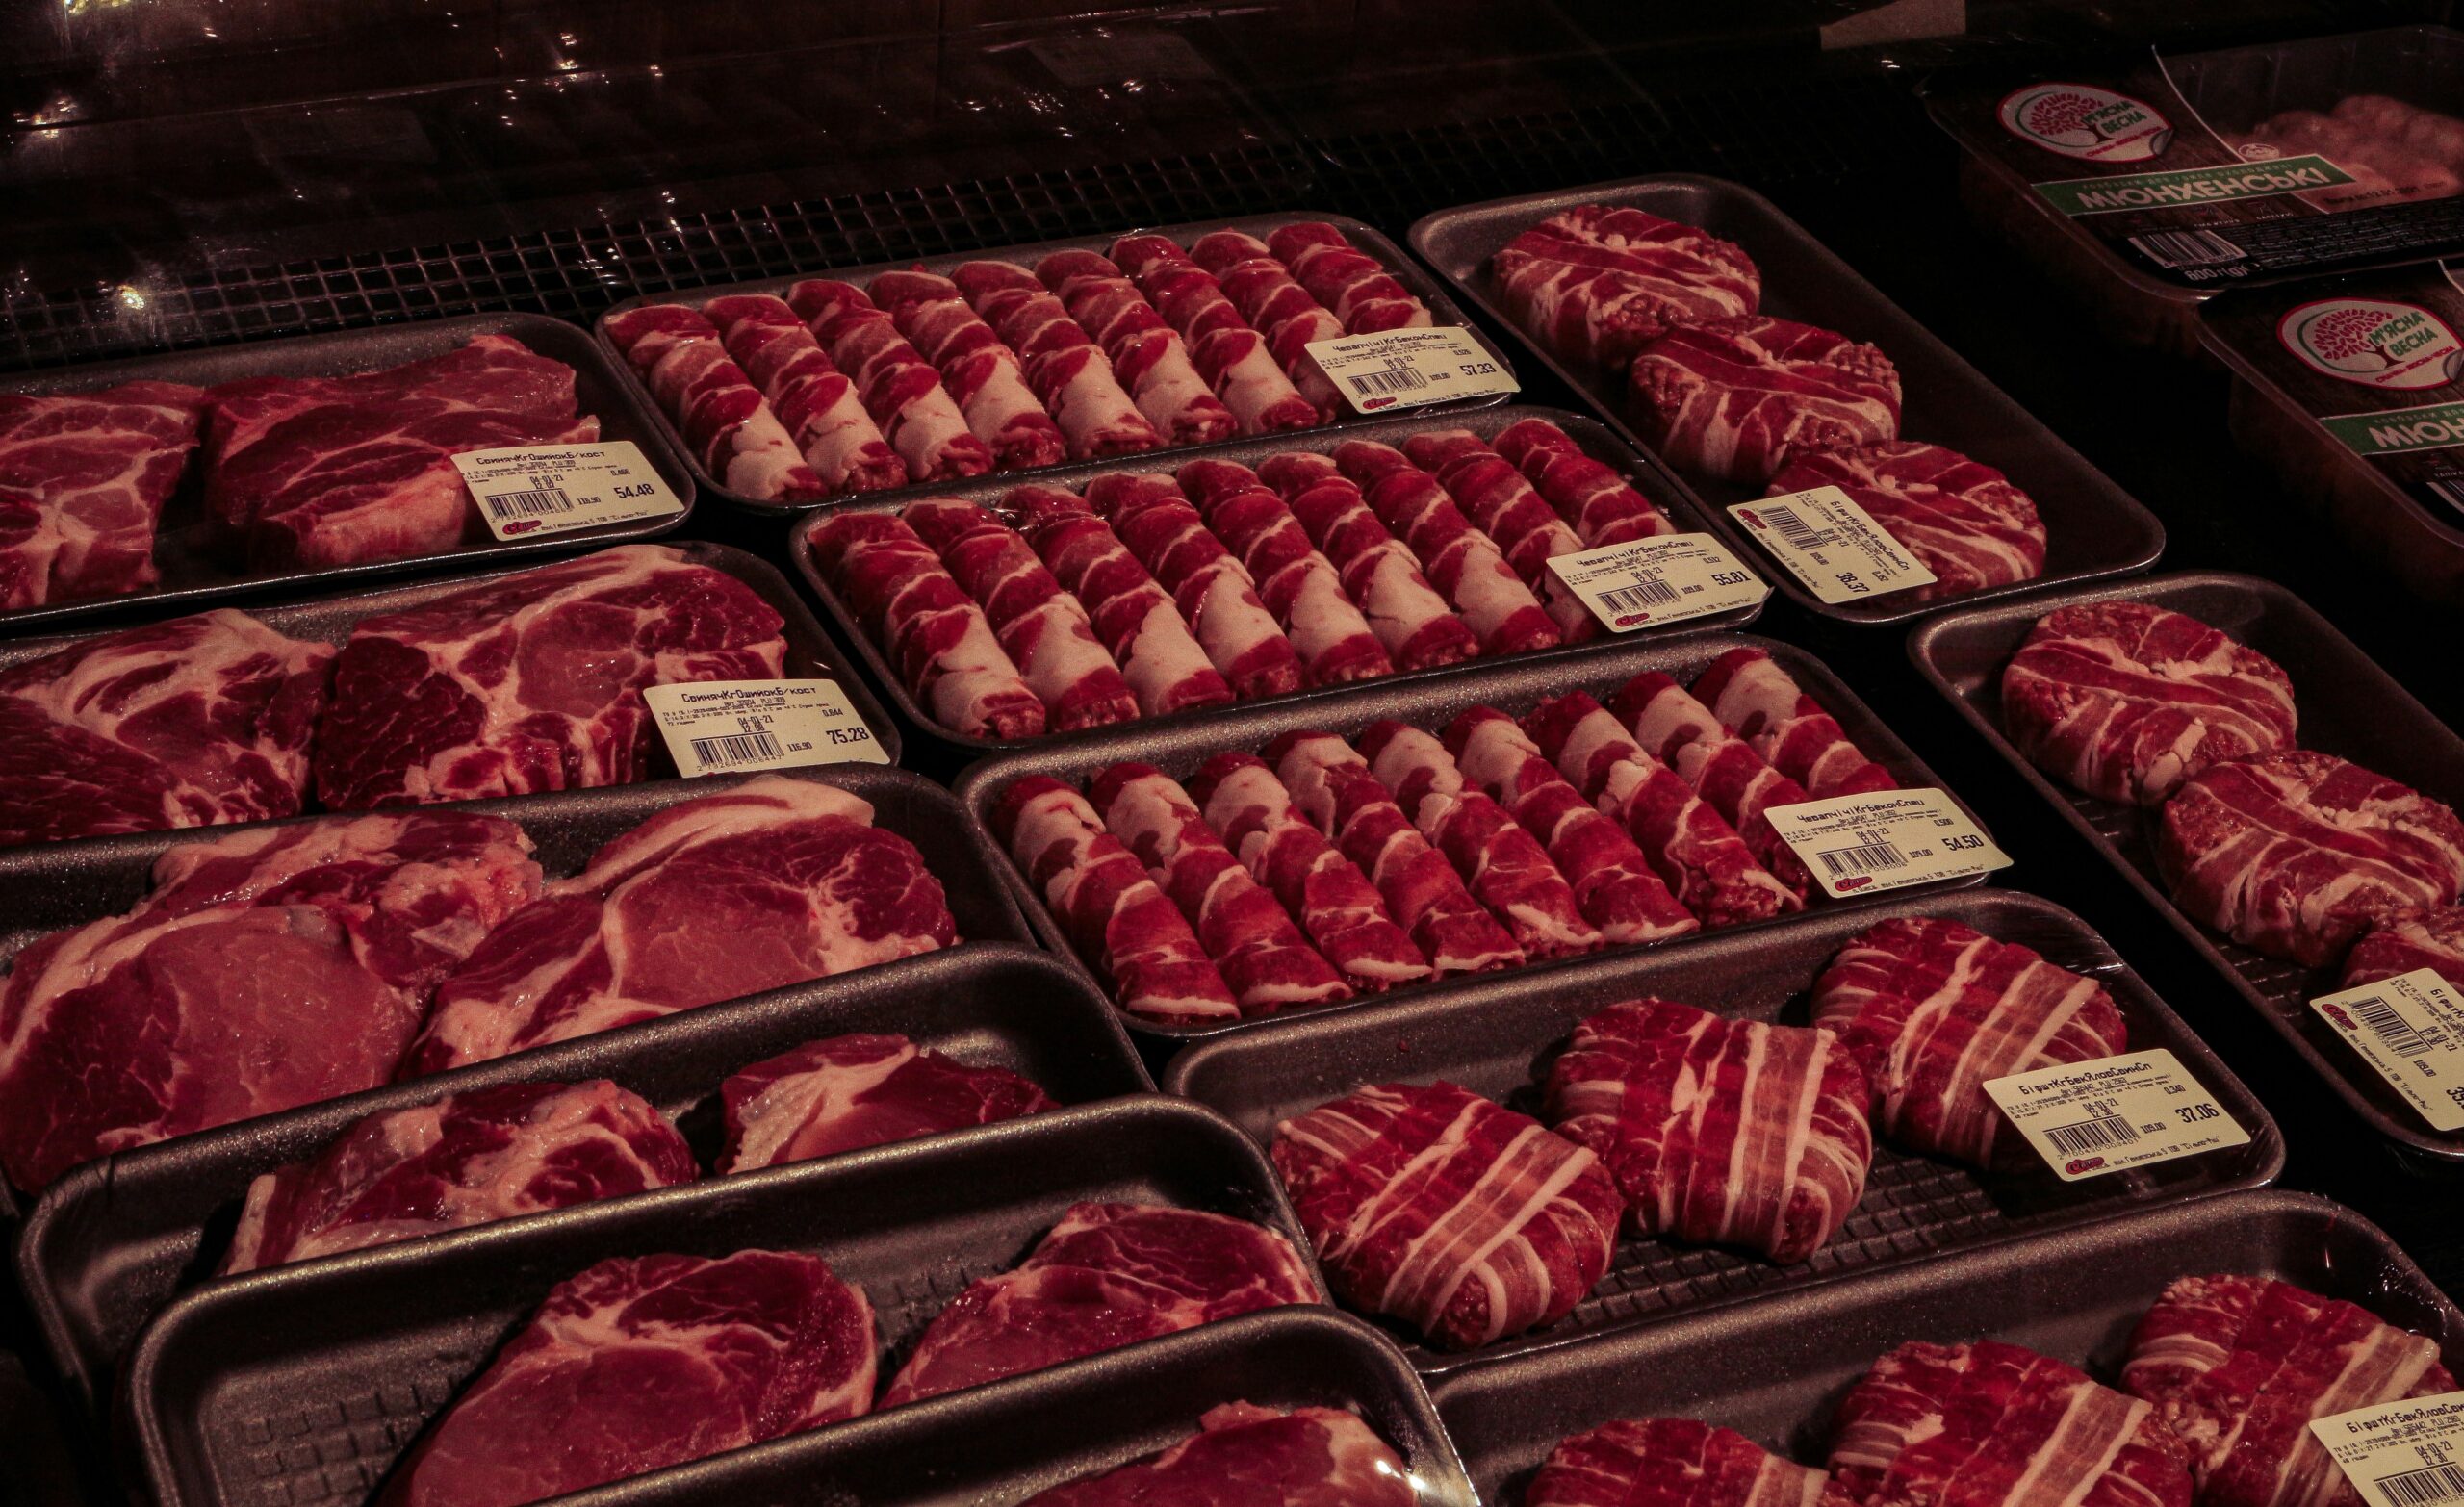 scopri i migliori prodotti a base di carne e ricette con la nostra ampia selezione di carni premium e idee di cucina.